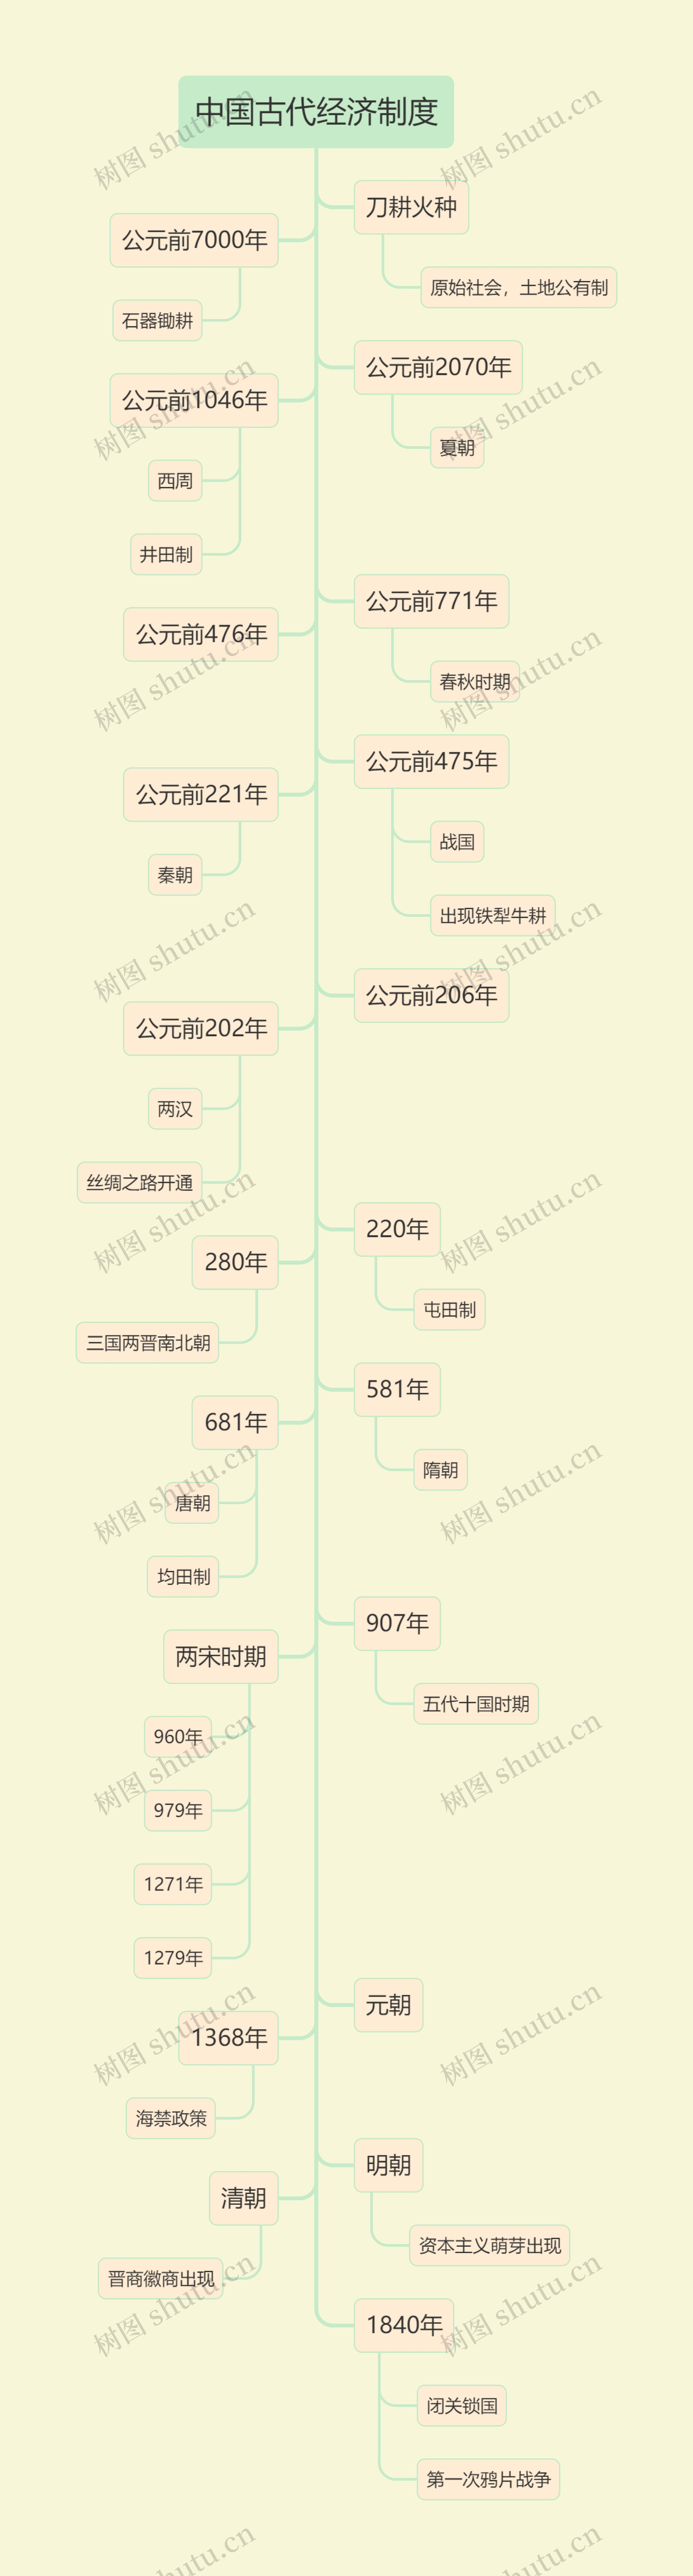 马卡龙色系中国古代经济制度树形图思维导图